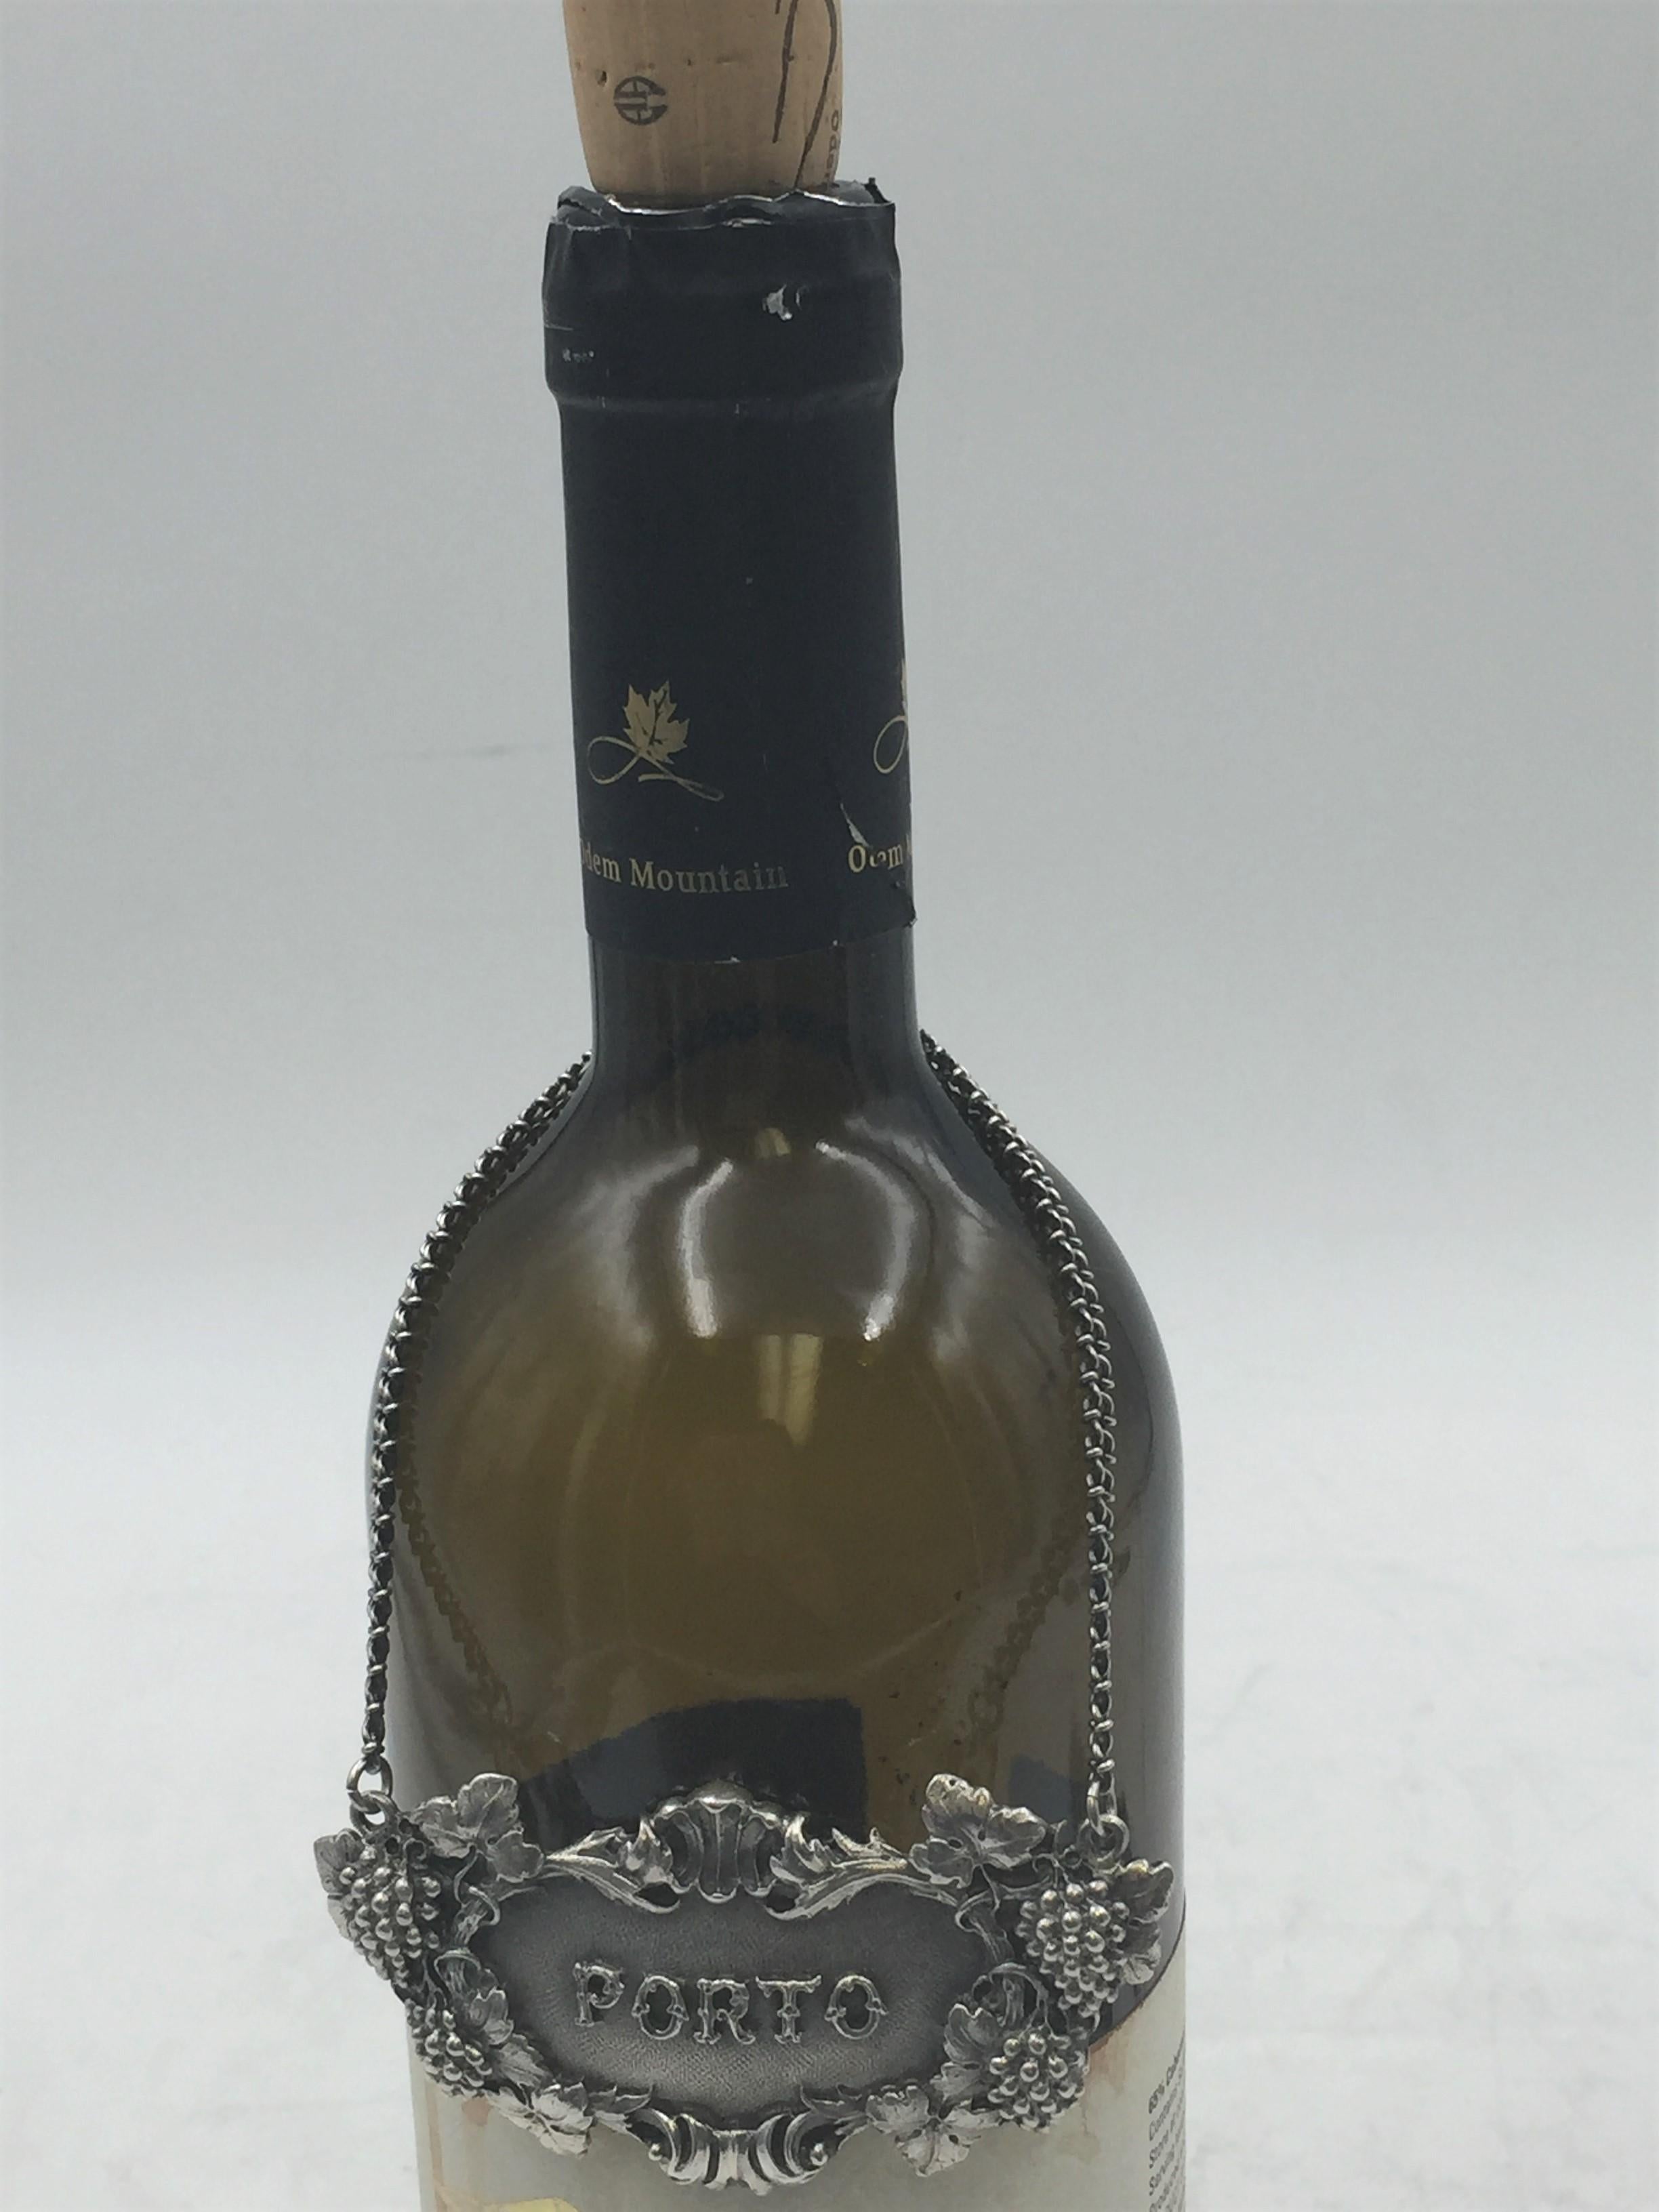 Seltene 925 Sterling Silber Weinkrug Etiketten Etikett. PORTO ist auf der Vorderseite in der Mitte eingeprägt.

Markierungen auf der Rückseite: Gianmaria Buccellati (Unterschrift und italienische Herstellermarke), ITALY, 925 (eingekreistes